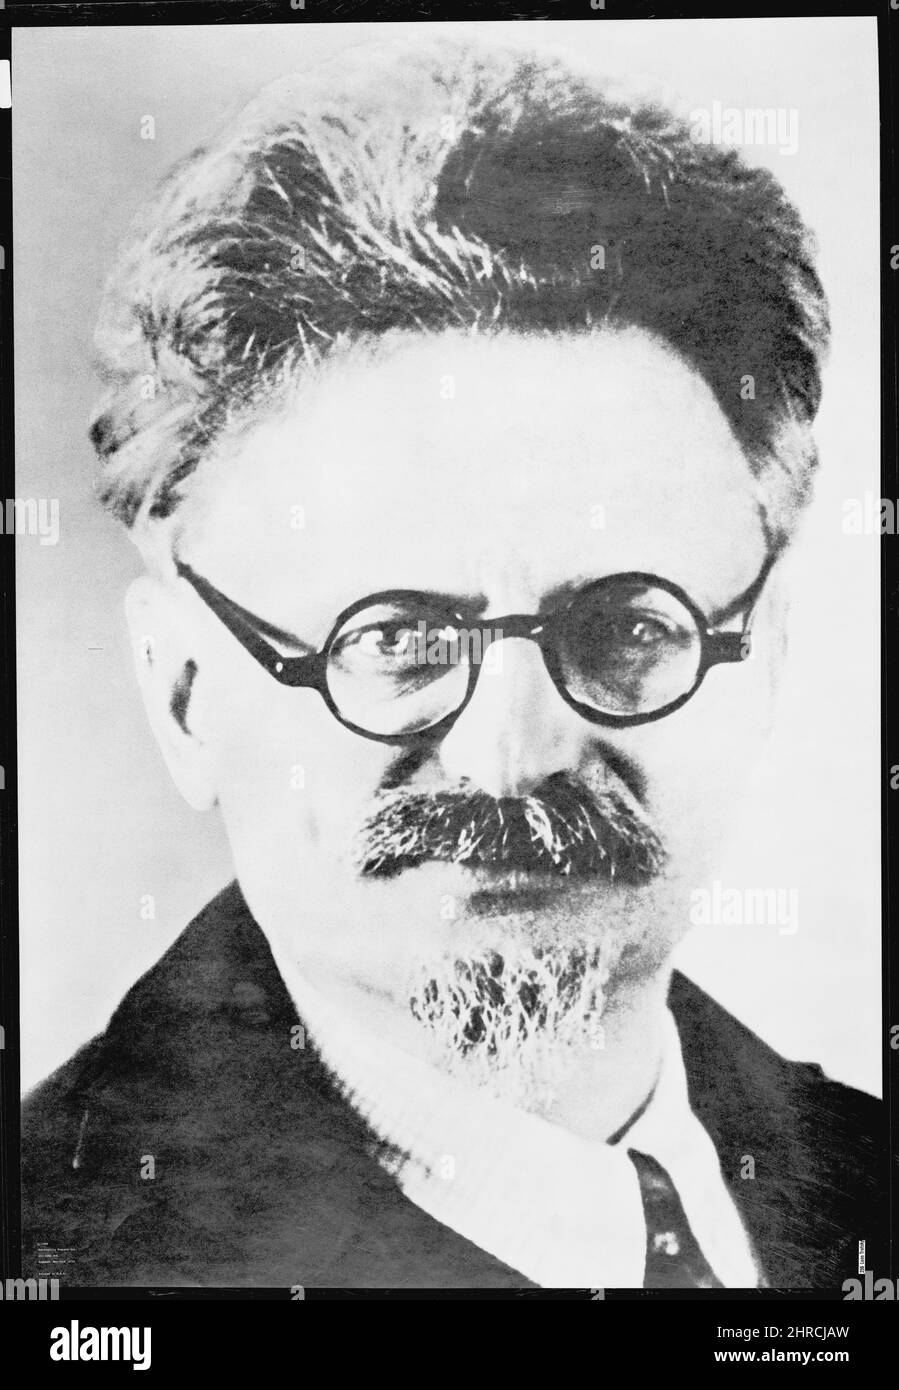 Ritratto del rivoluzionario russo, Leon Trotsky (1879-1940), nato Lev Davidovich Bronstein. Nessuna data o luogo Foto Stock